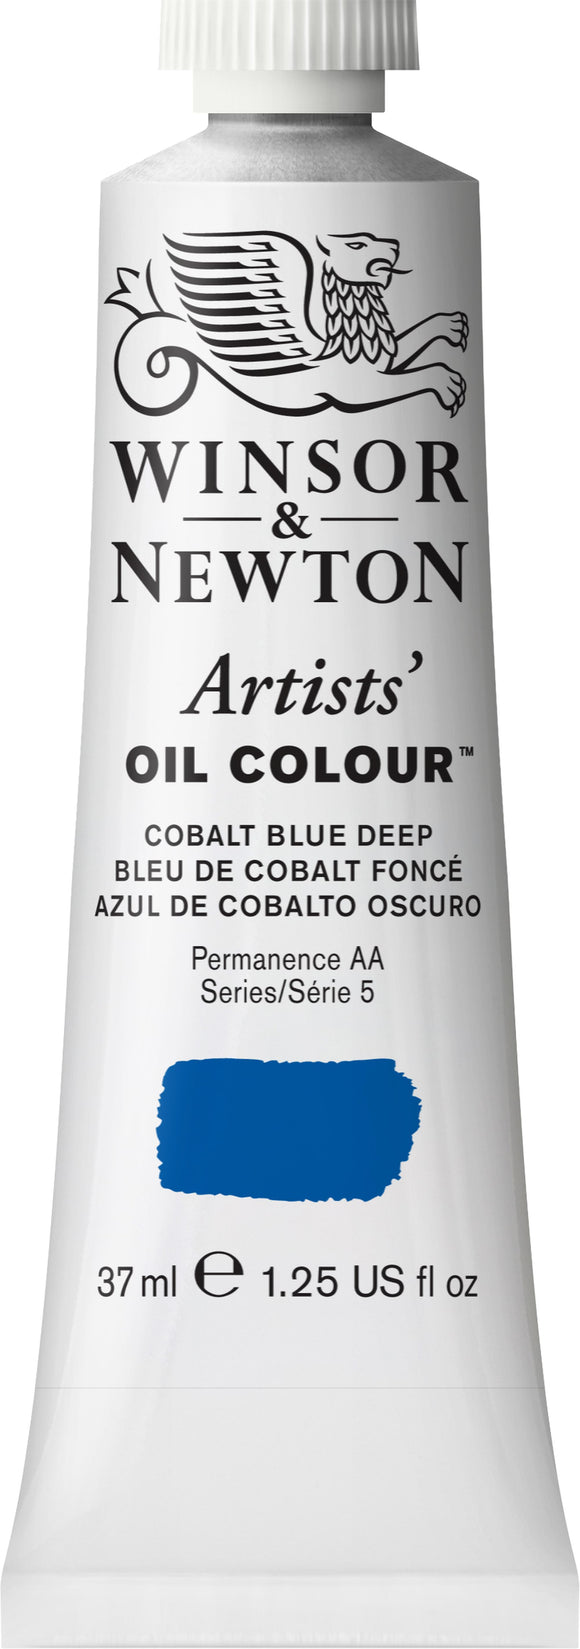 Winsor & Newton Artist Oil Colour Cobalt Blue Deep 37Ml